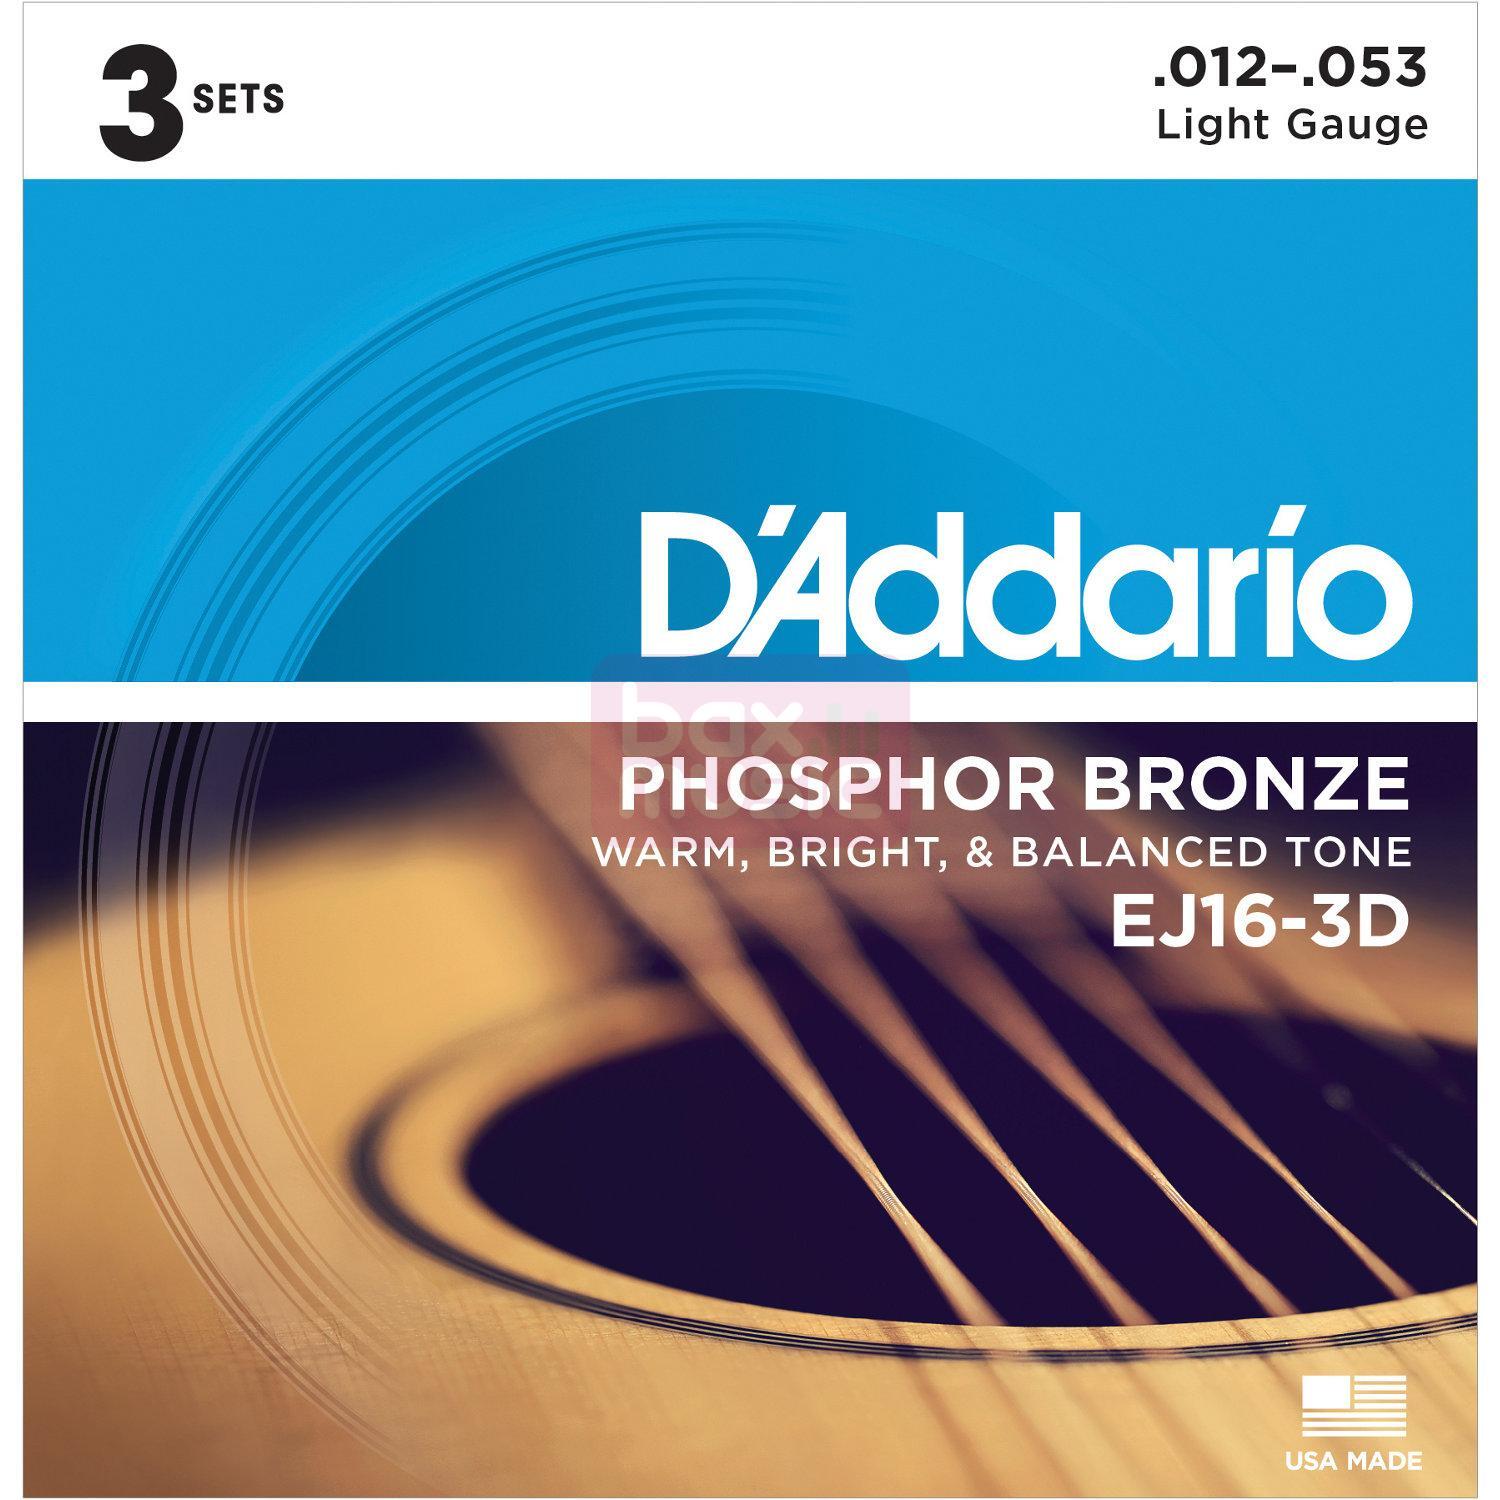 D'ADDARIO Daddario EJ16-3D snarenset voor akoestische gitaar 3 sets